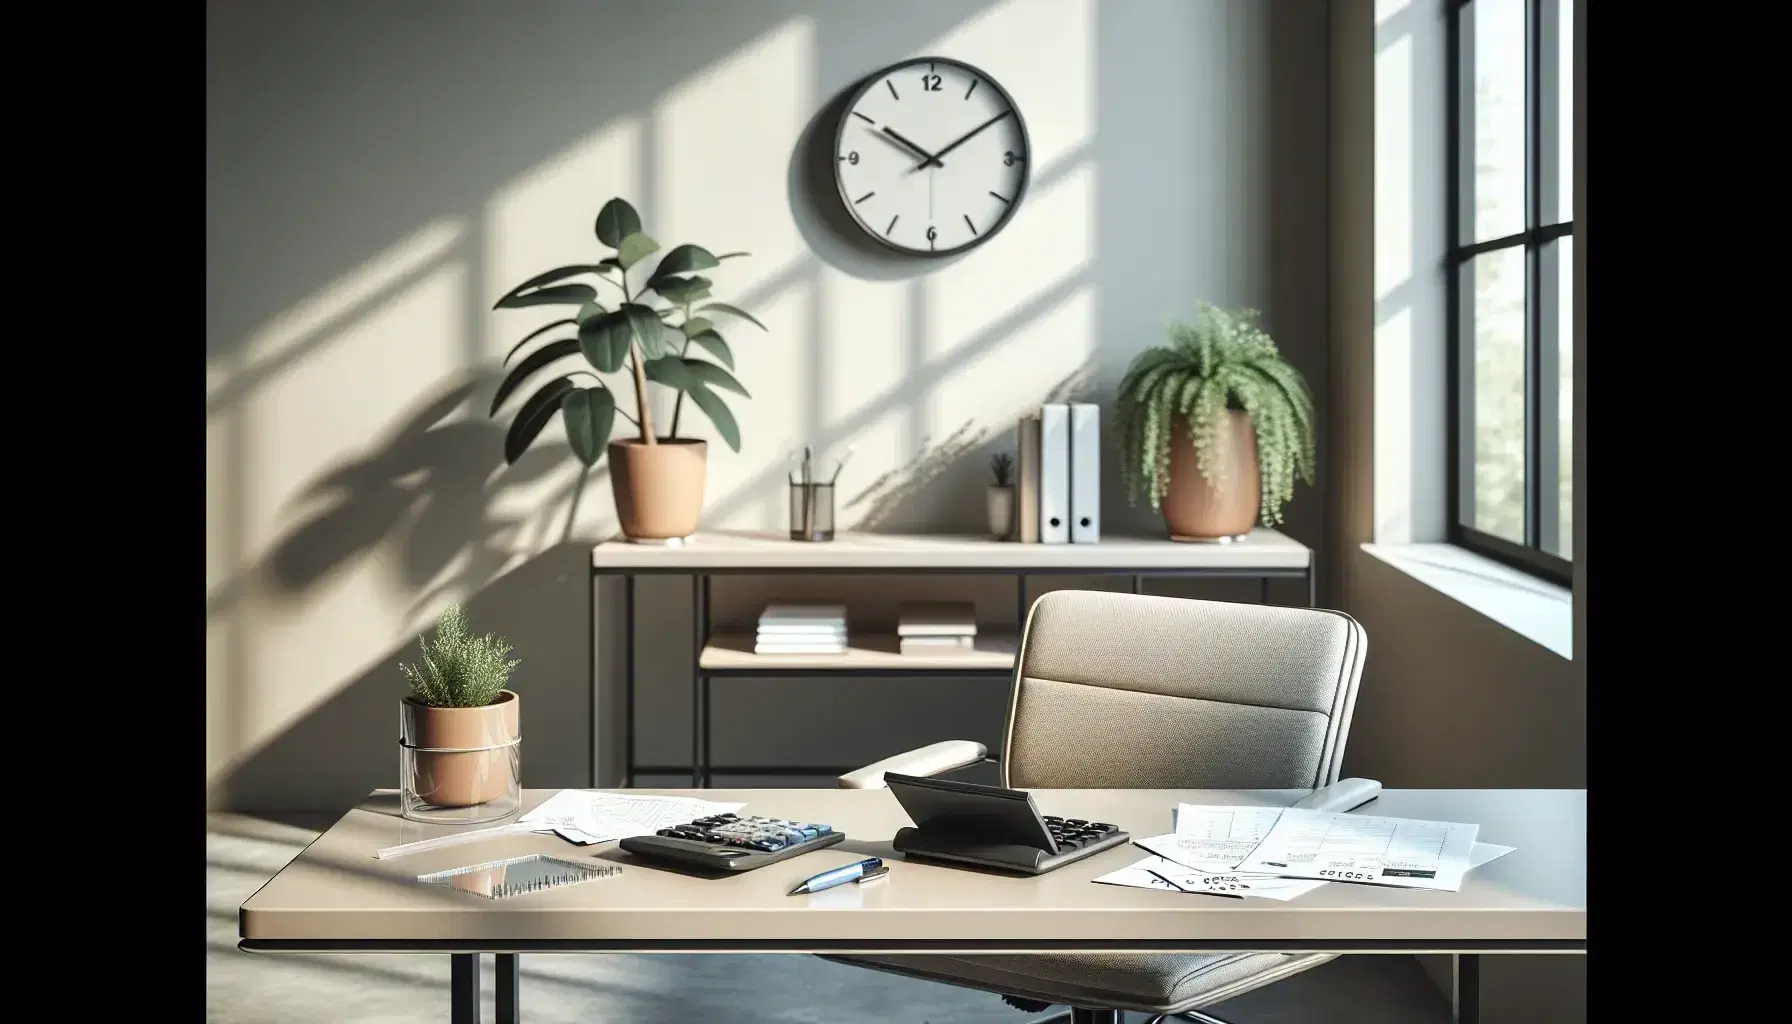 Oficina moderna y luminosa con escritorio, calculadora, papeles y silla ergonómica, junto a planta interior y reloj de pared.